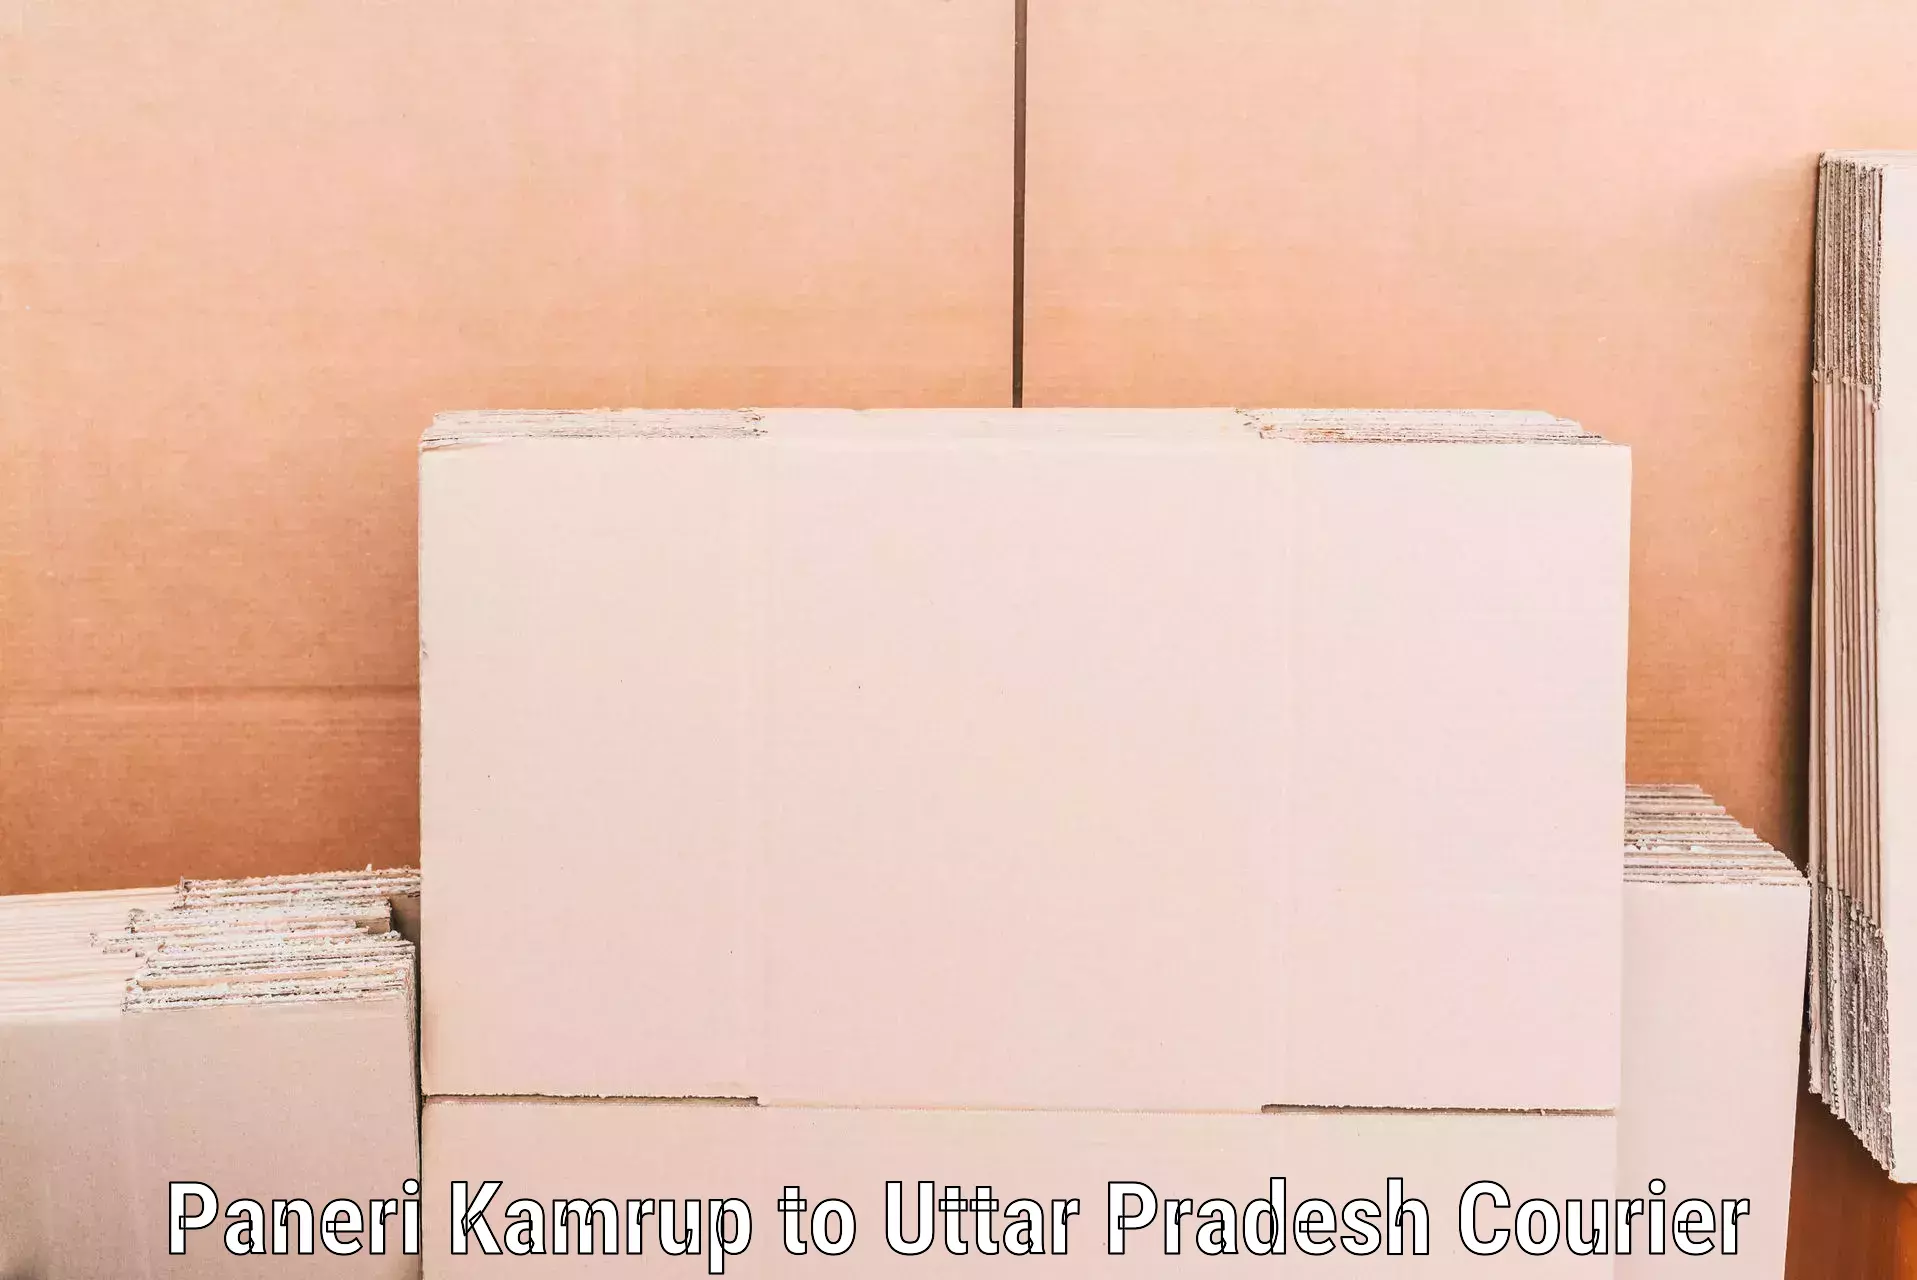 Furniture moving experts Paneri Kamrup to Uttar Pradesh